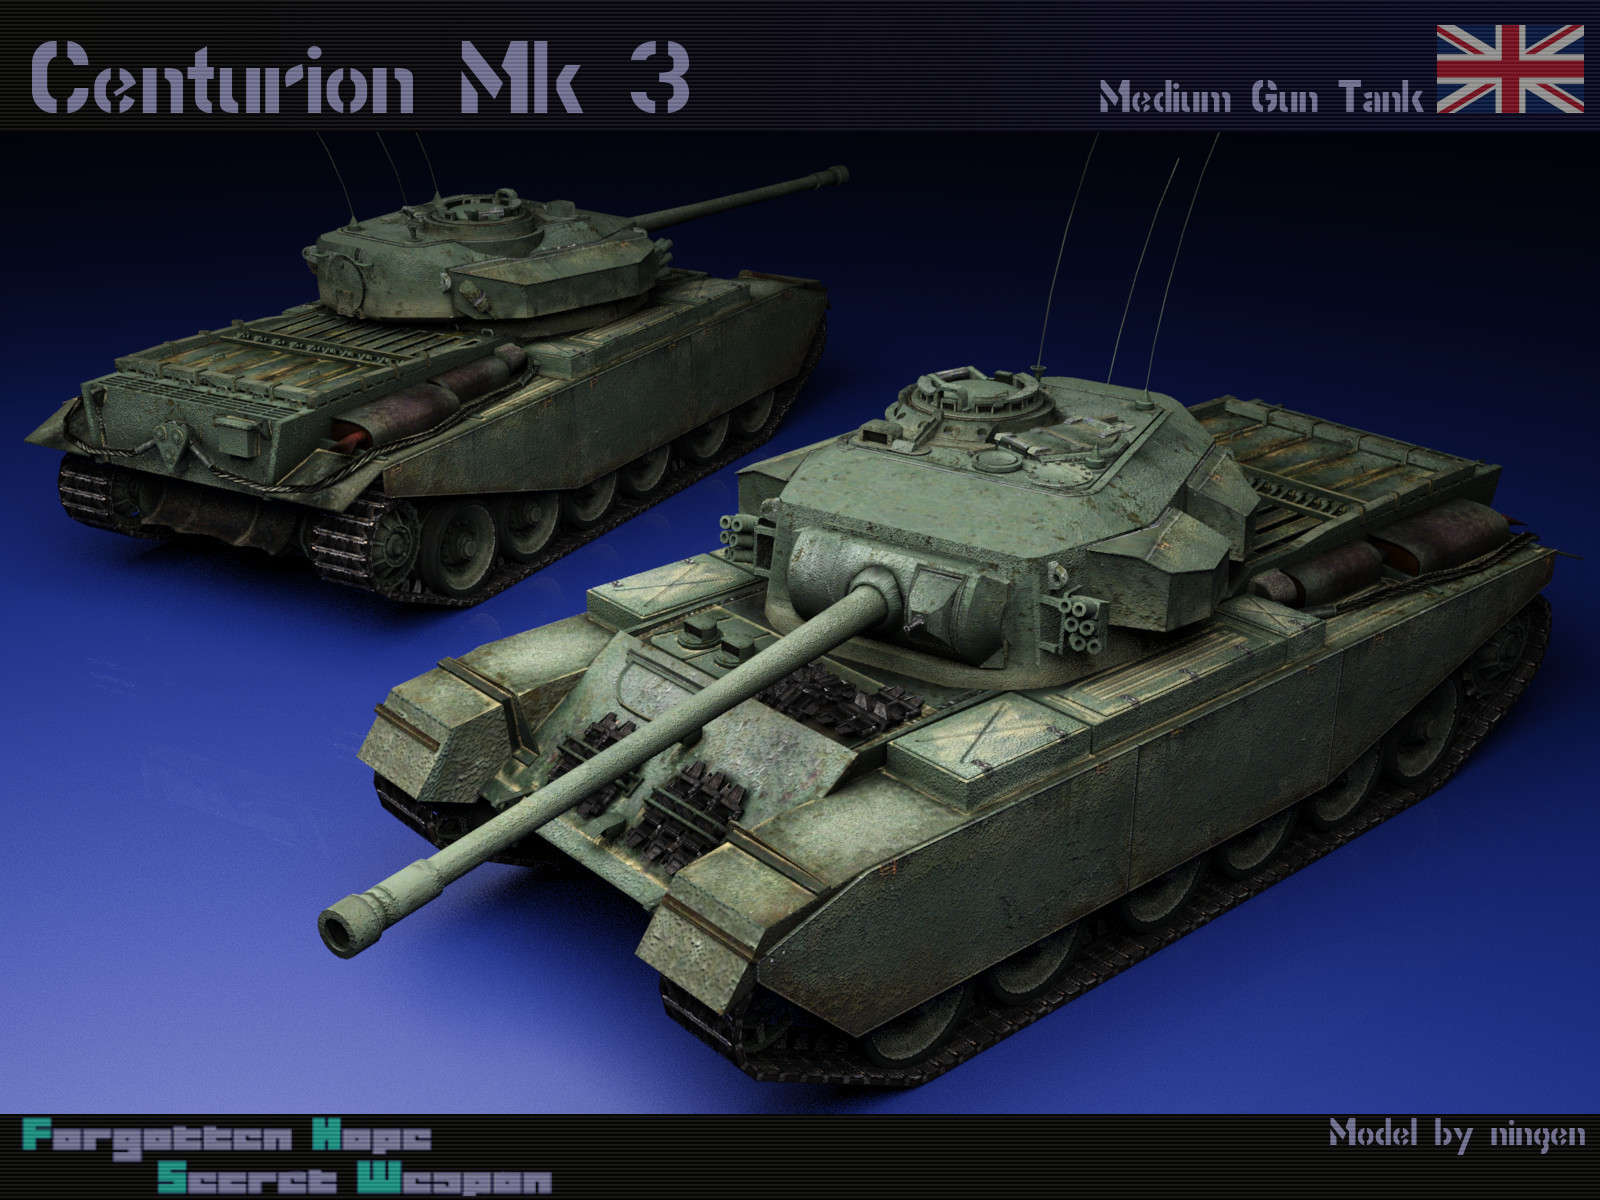 CenturionMk3 Render